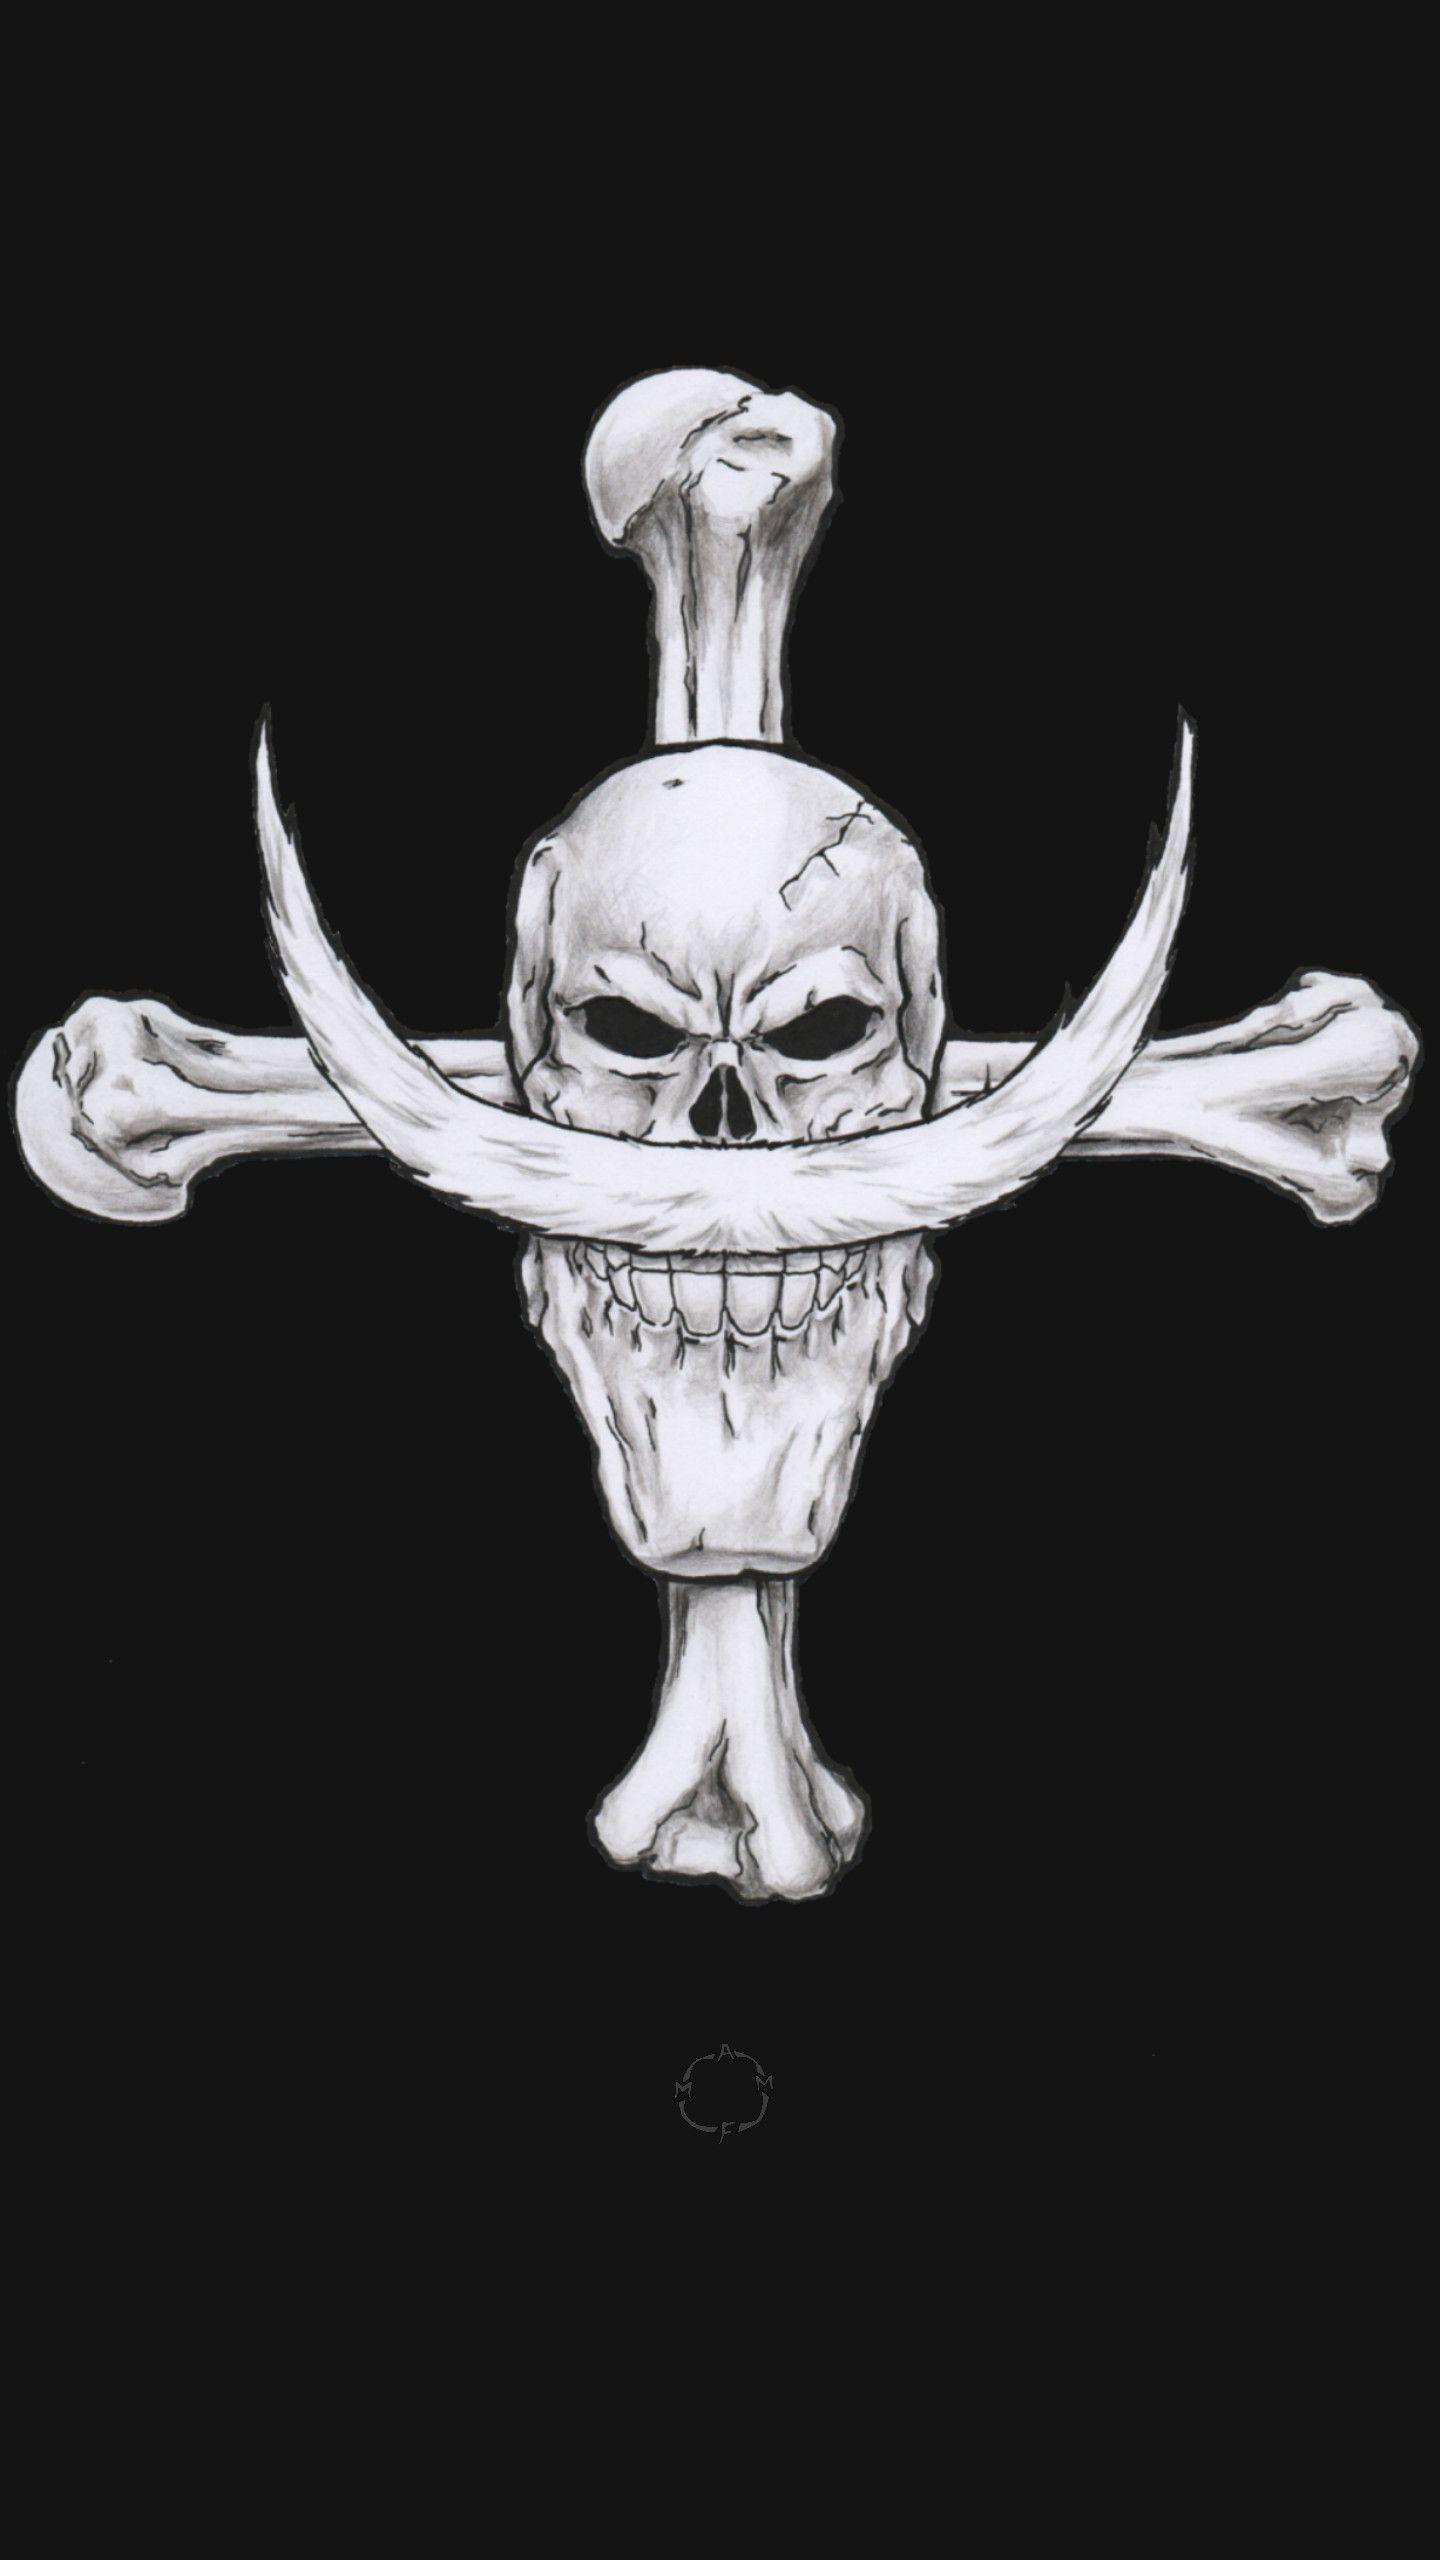 Logo bajak laut shirohige